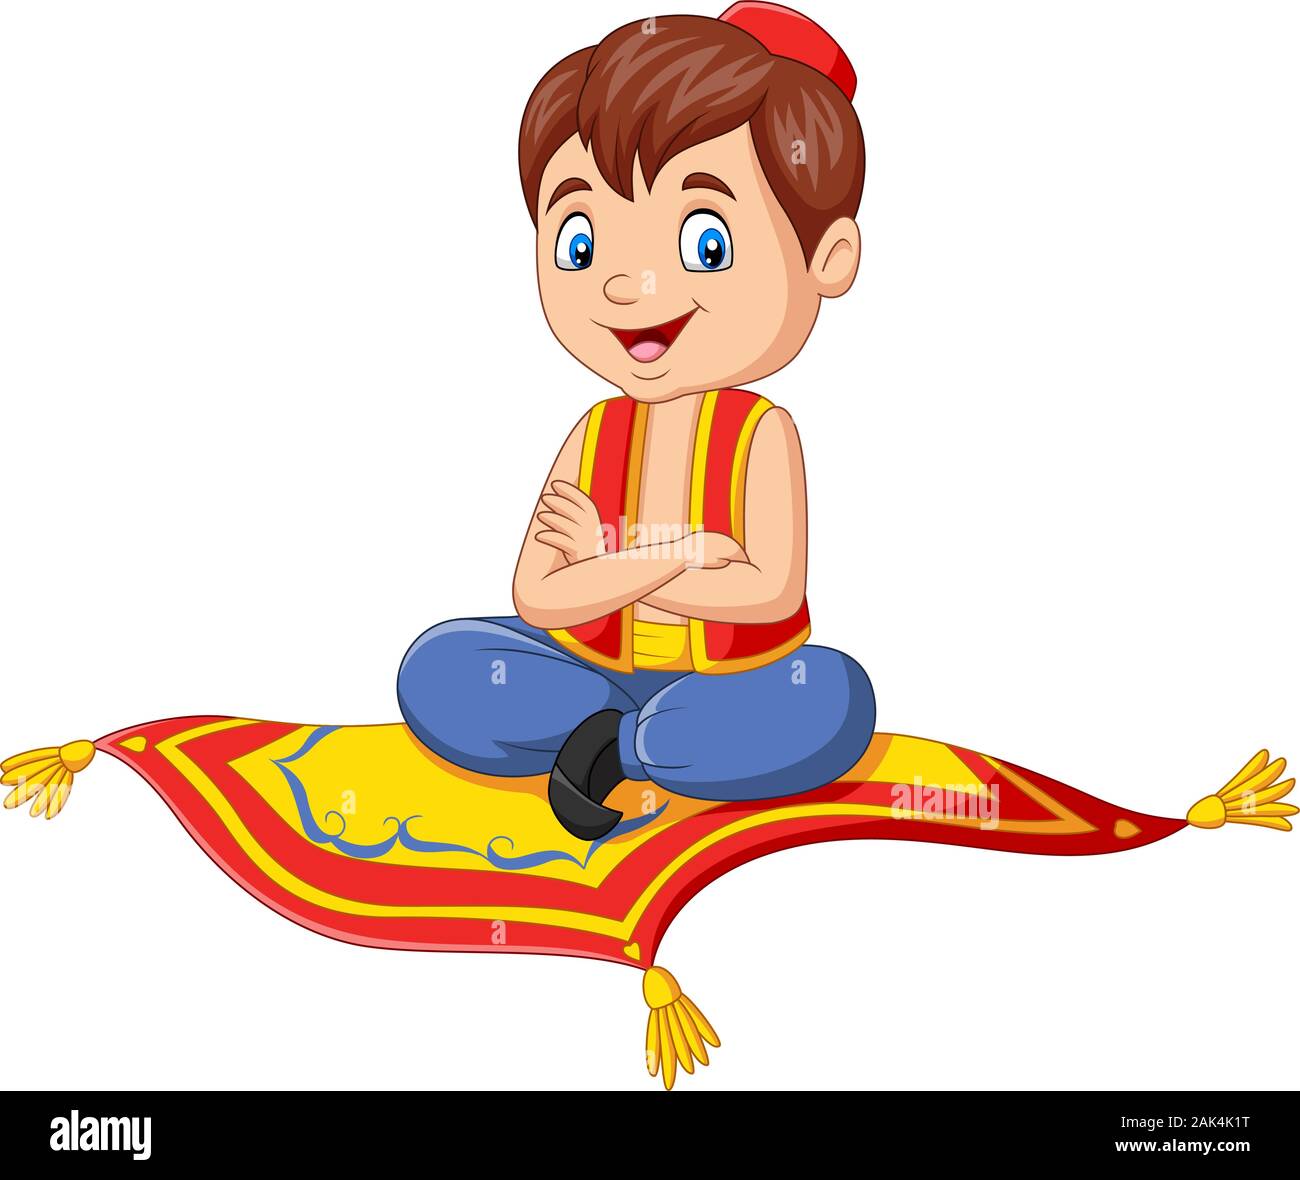 Cartoon aladdin Reisen auf fliegenden Teppich Stock-Vektorgrafik - Alamy